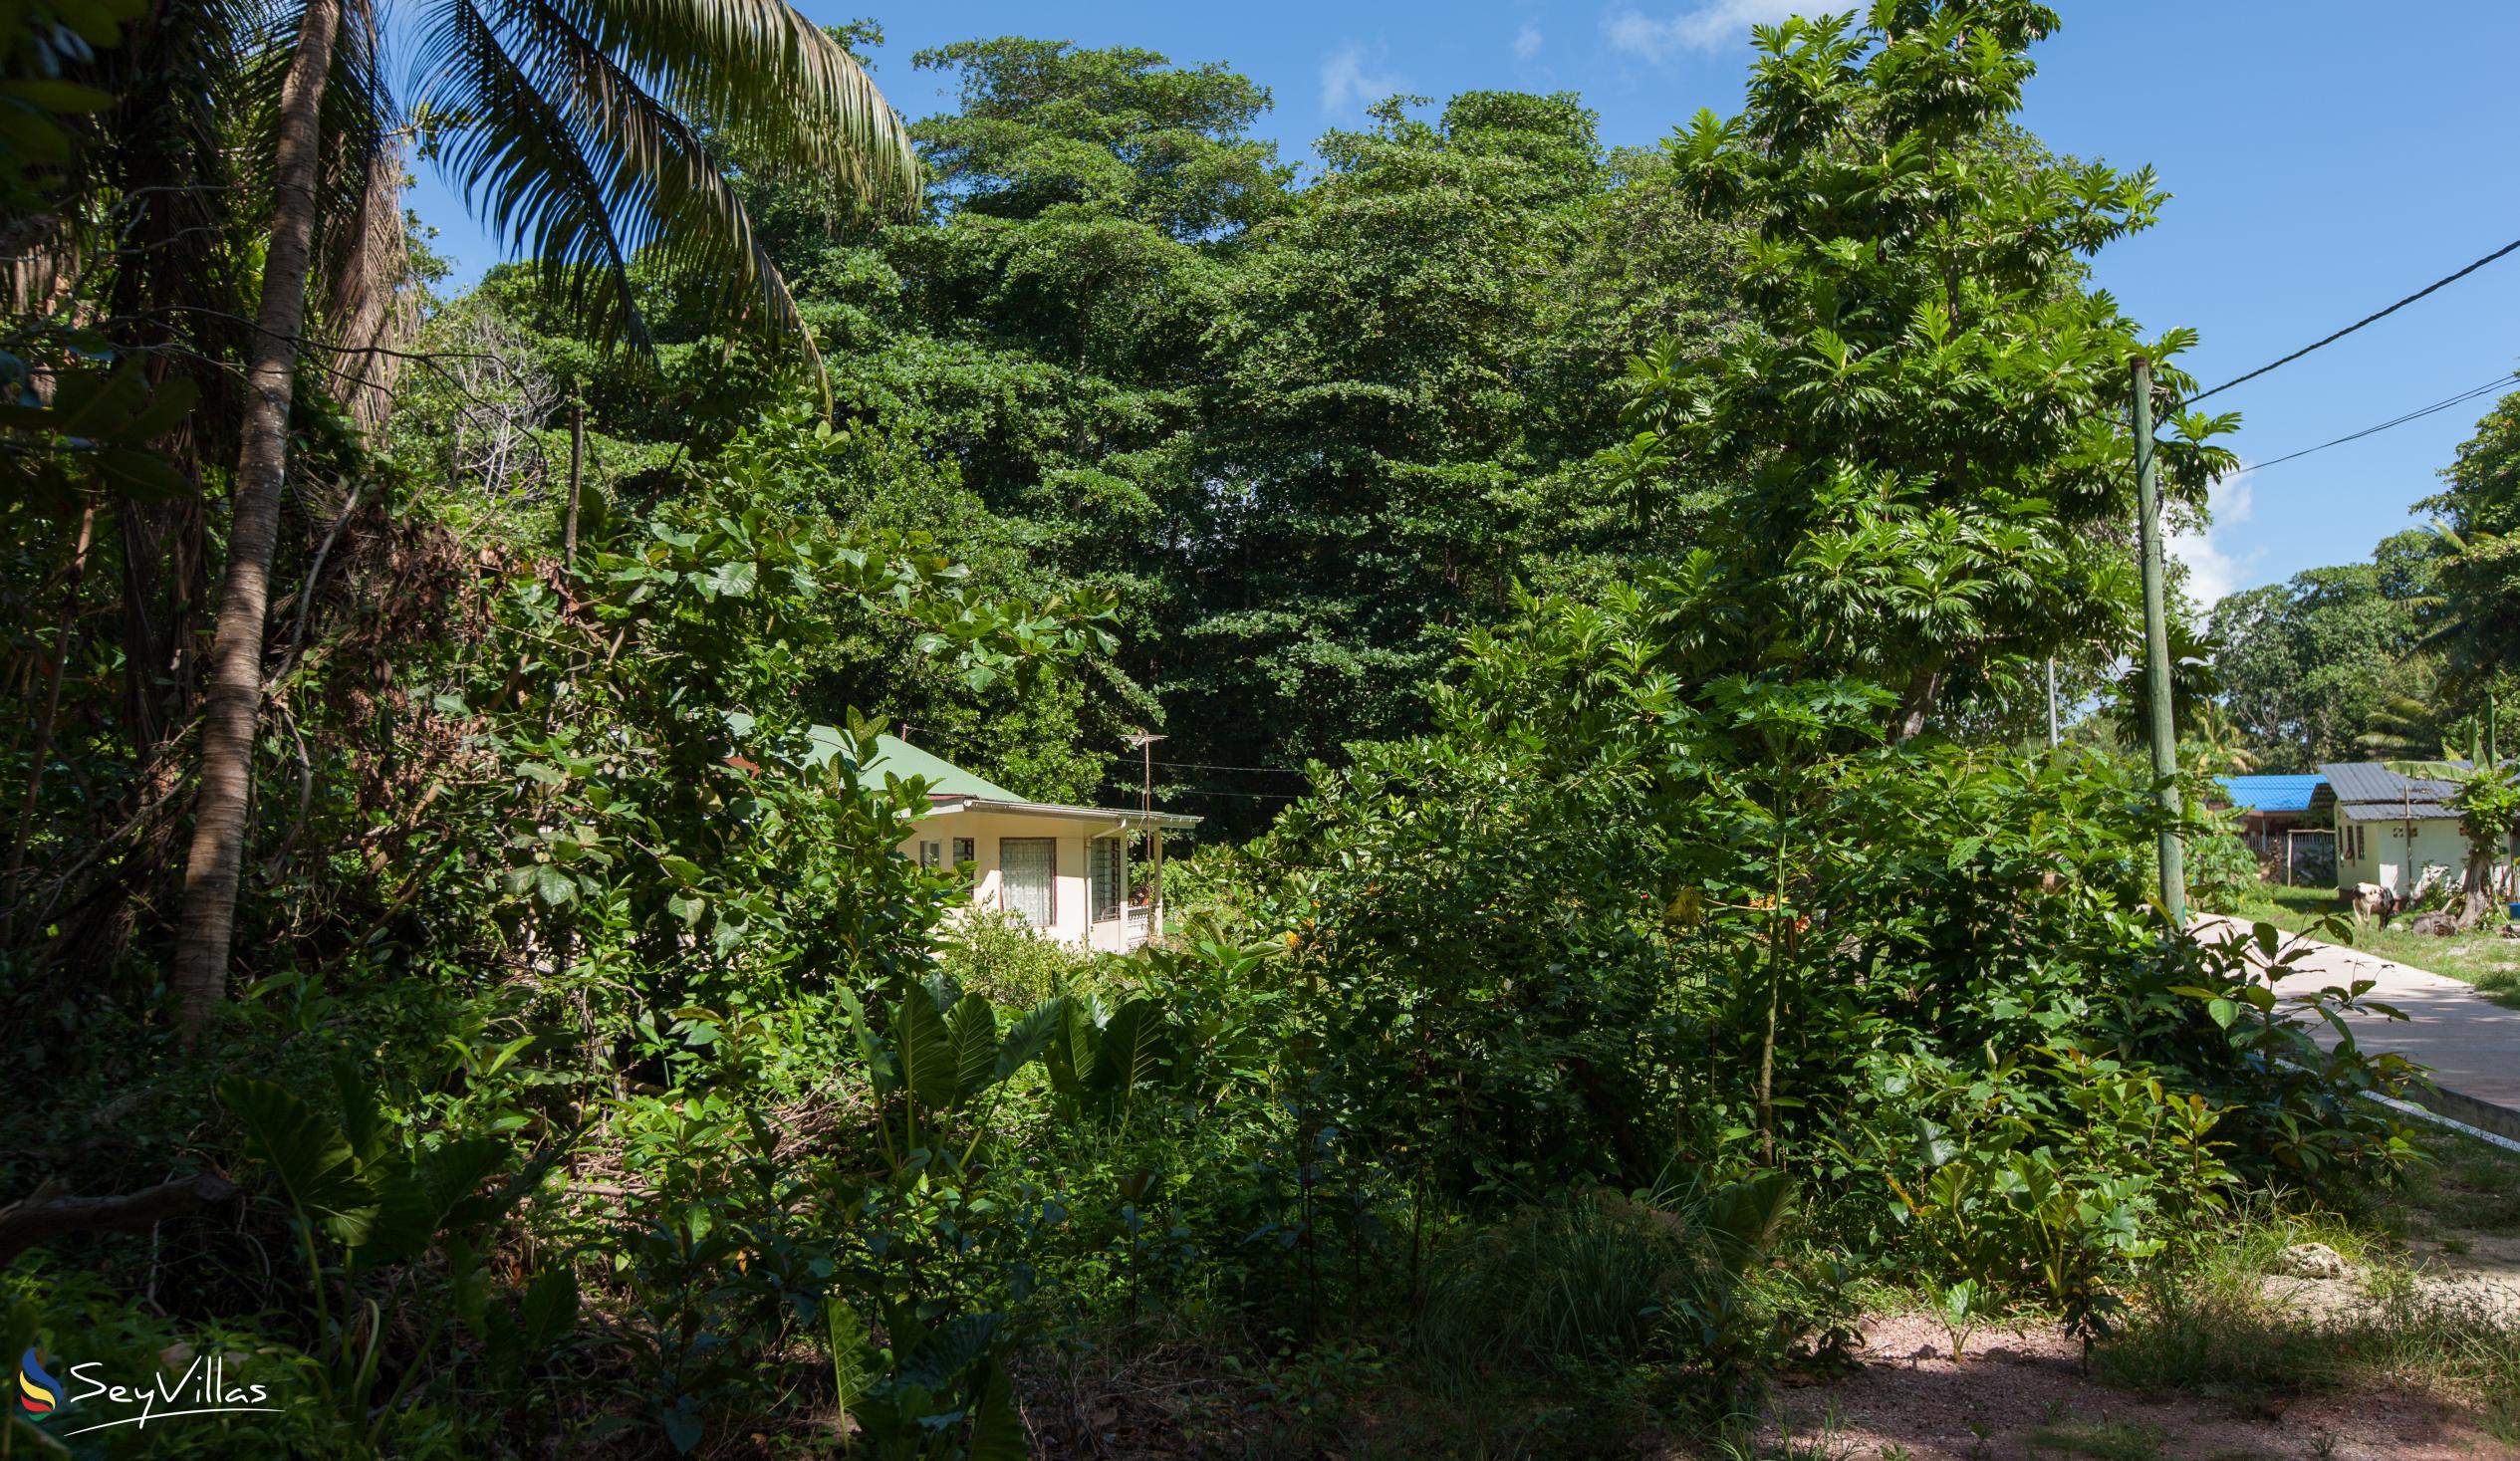 Foto 56: Tannette's Villa - Posizione - La Digue (Seychelles)